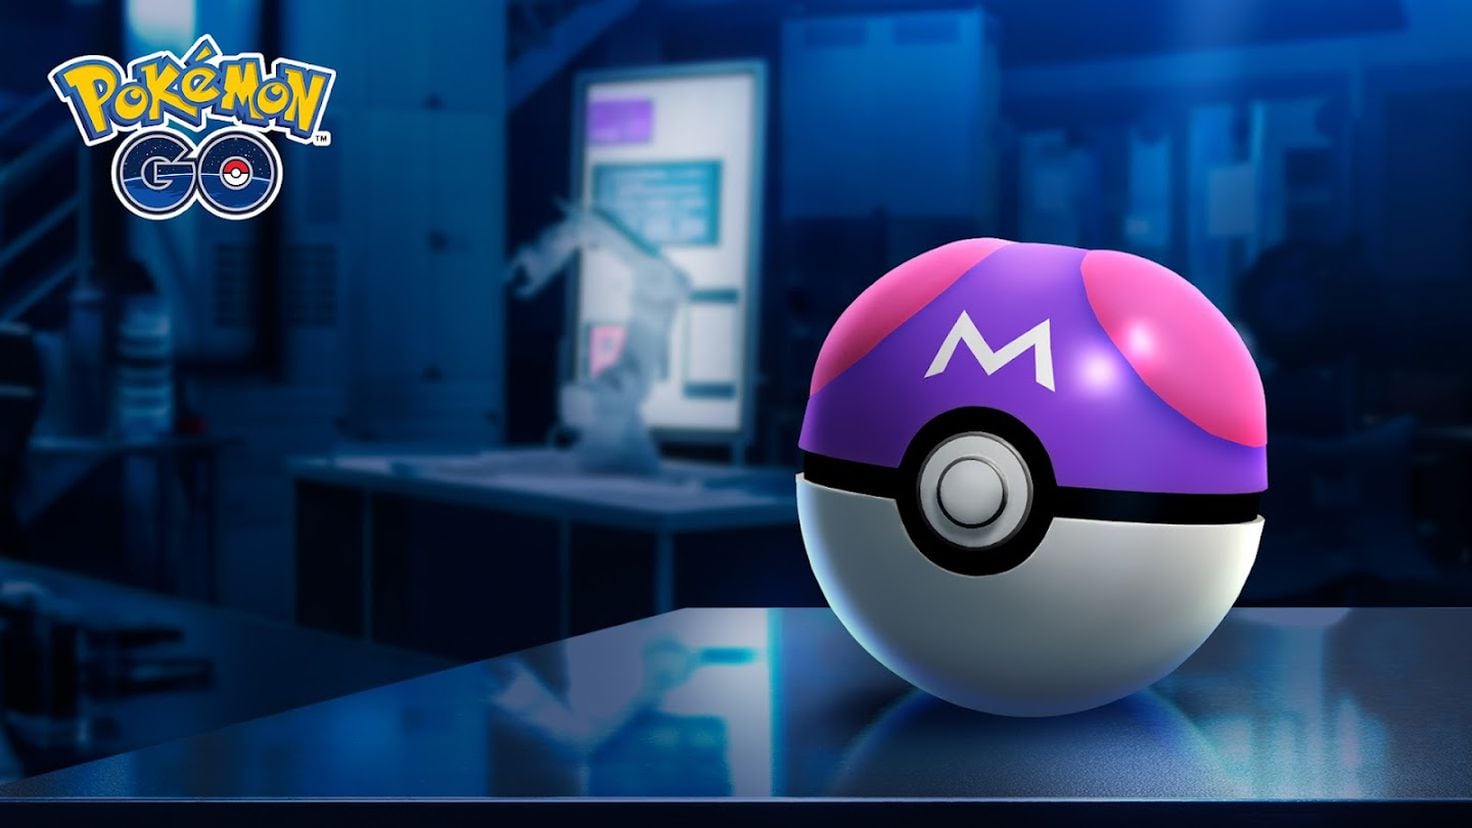 Jirachi Shiny in Pokémon GO: How to get it - Meristation